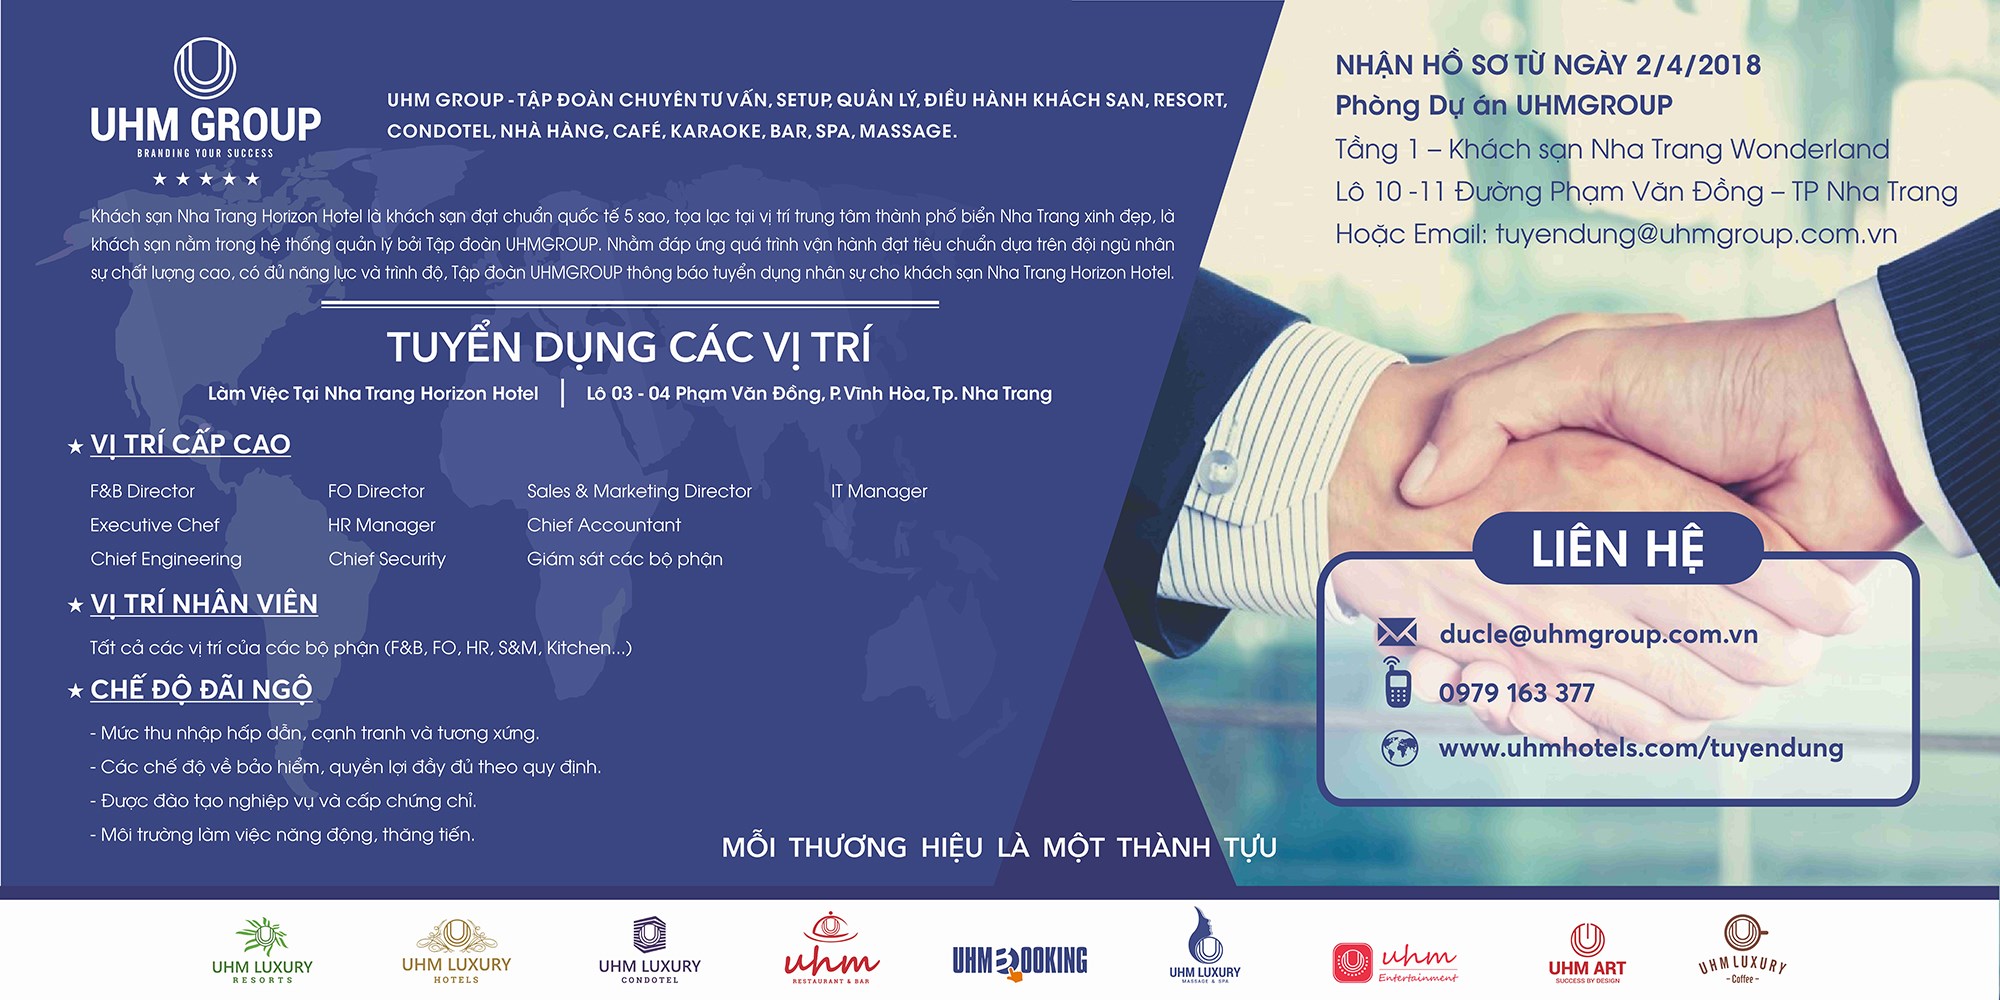 UHM Group Nha Trang - Tuyển dụng tại khách sạn 5 sao - Horizon Hotel